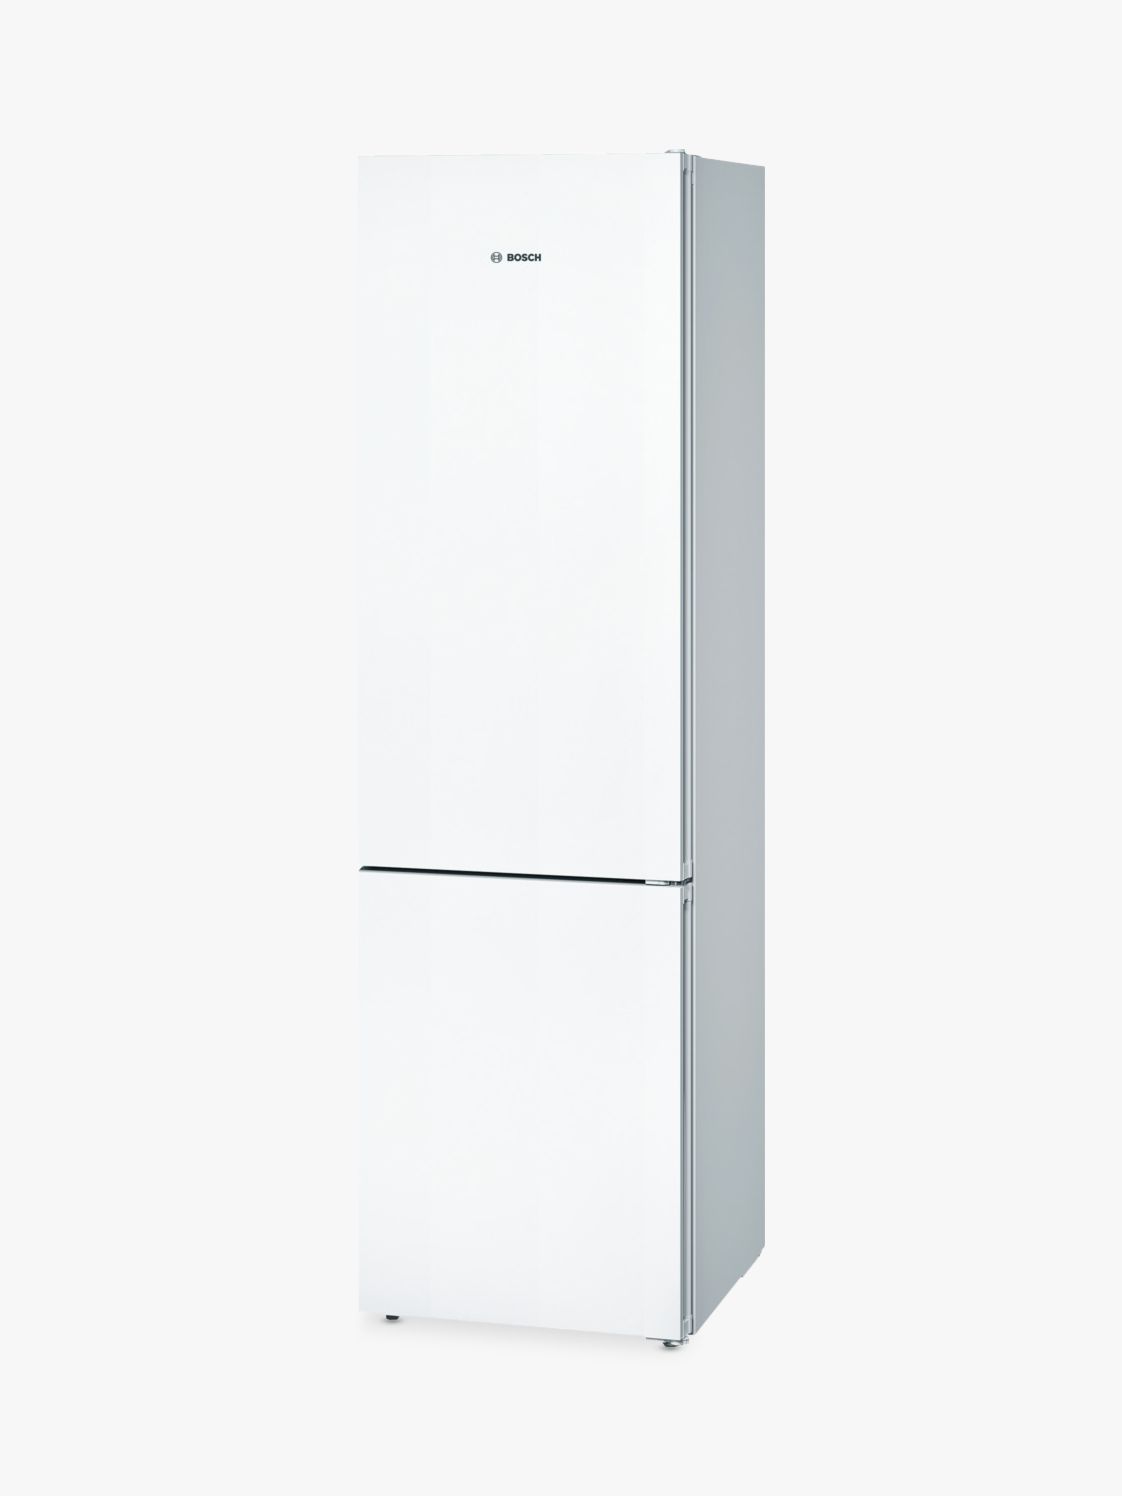 Bosch KGN39VW35G Freestanding Fridge Freezer, A++ Energy Rating, 60 cm Wide in White